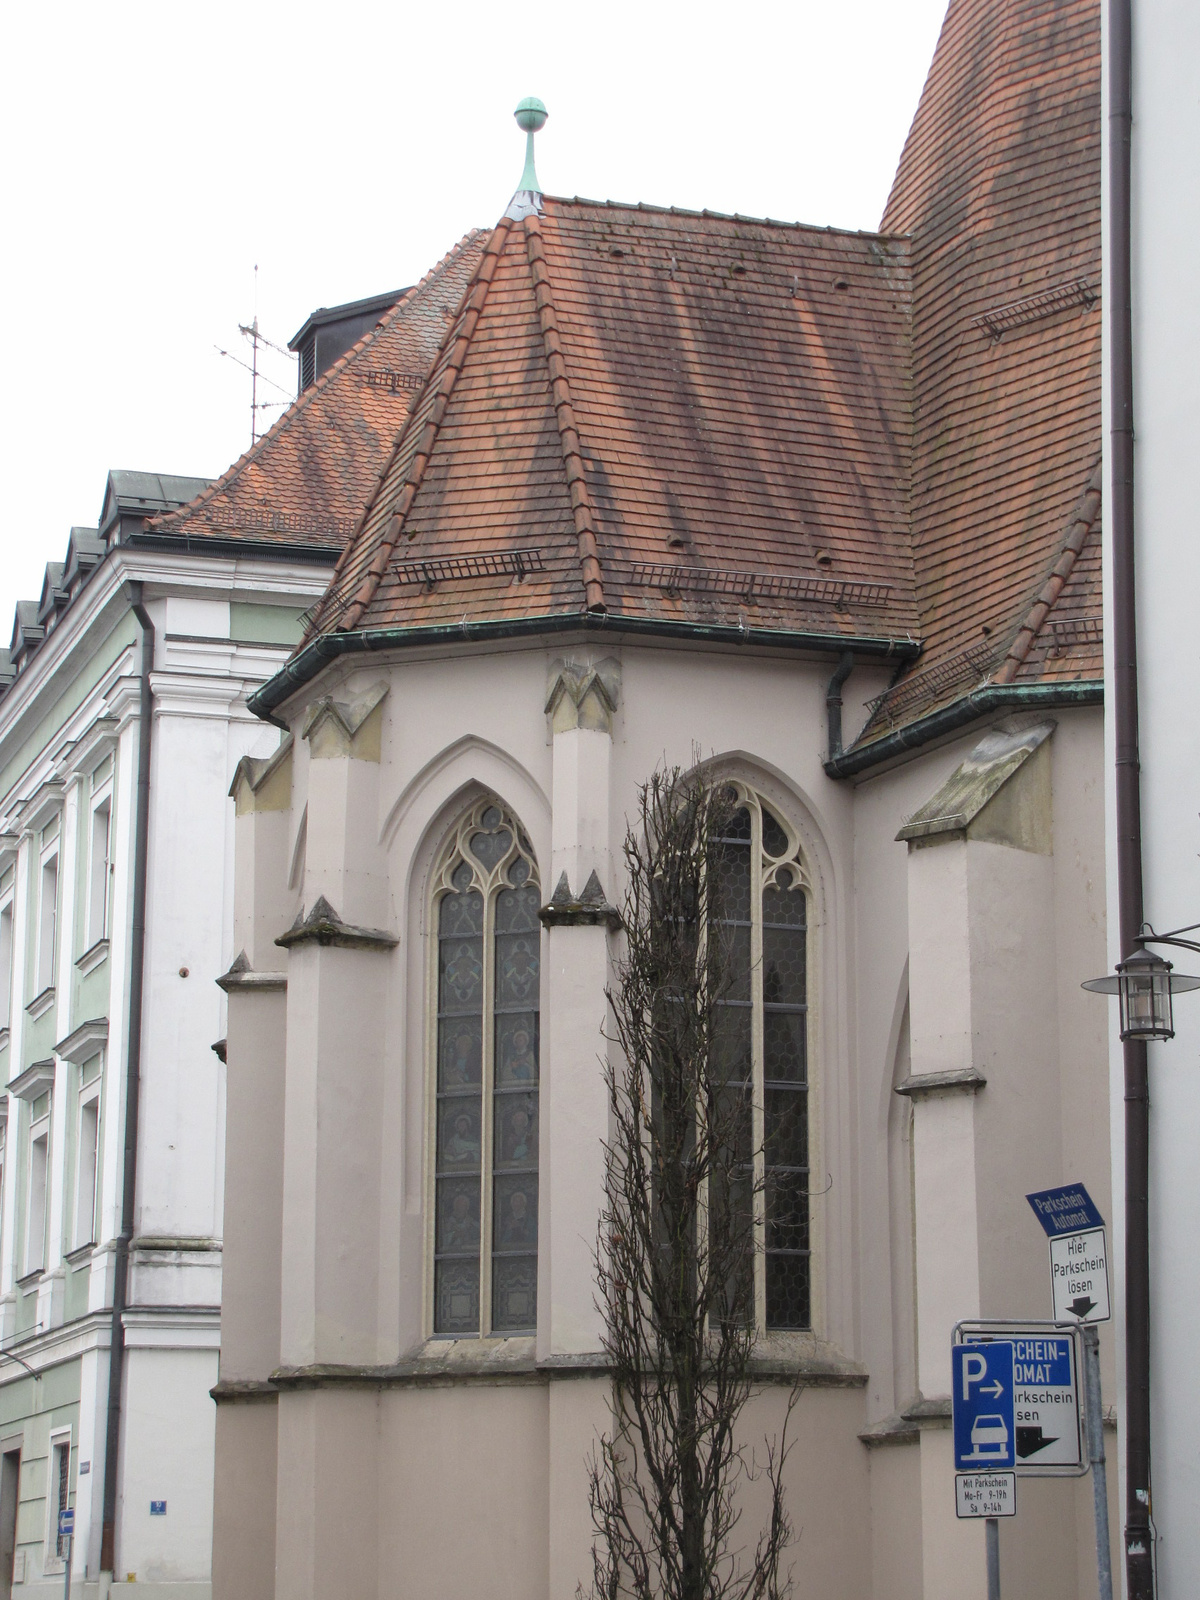 Passau, az evangélikus templom, SzG3